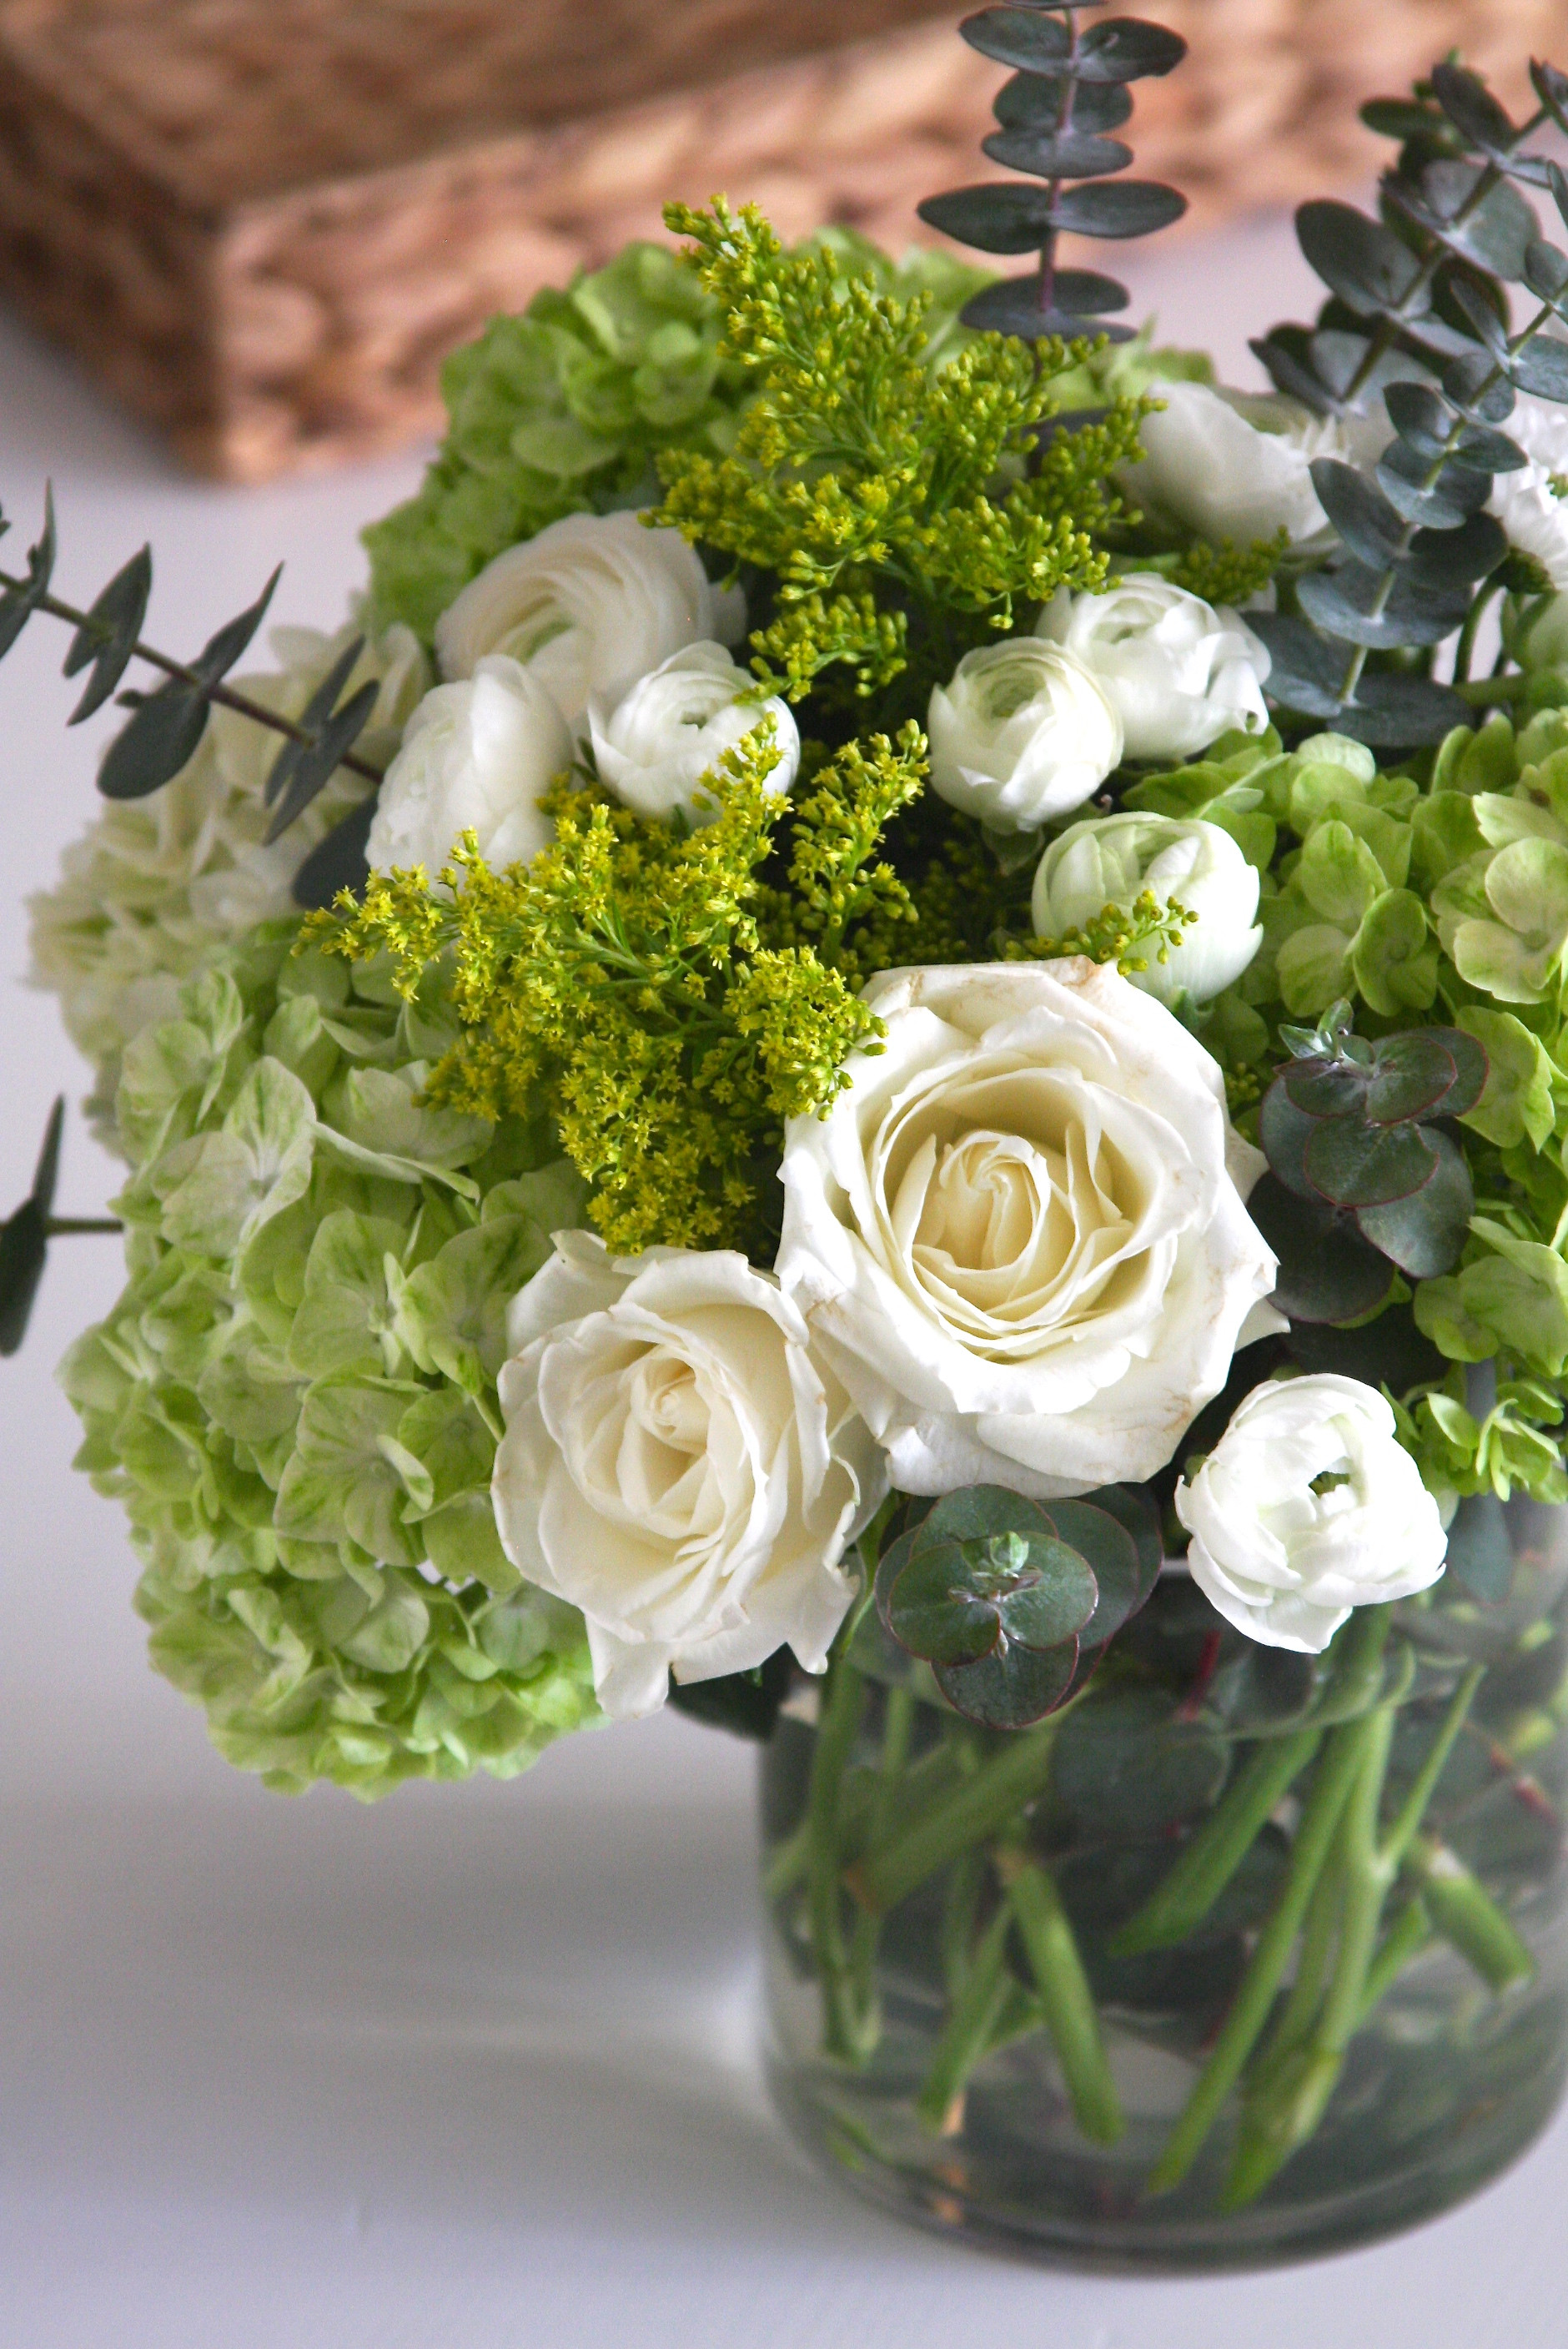 Best ideas about DIY Flower Arrangements
. Save or Pin Elegant DIY Flower Arrangement Now.